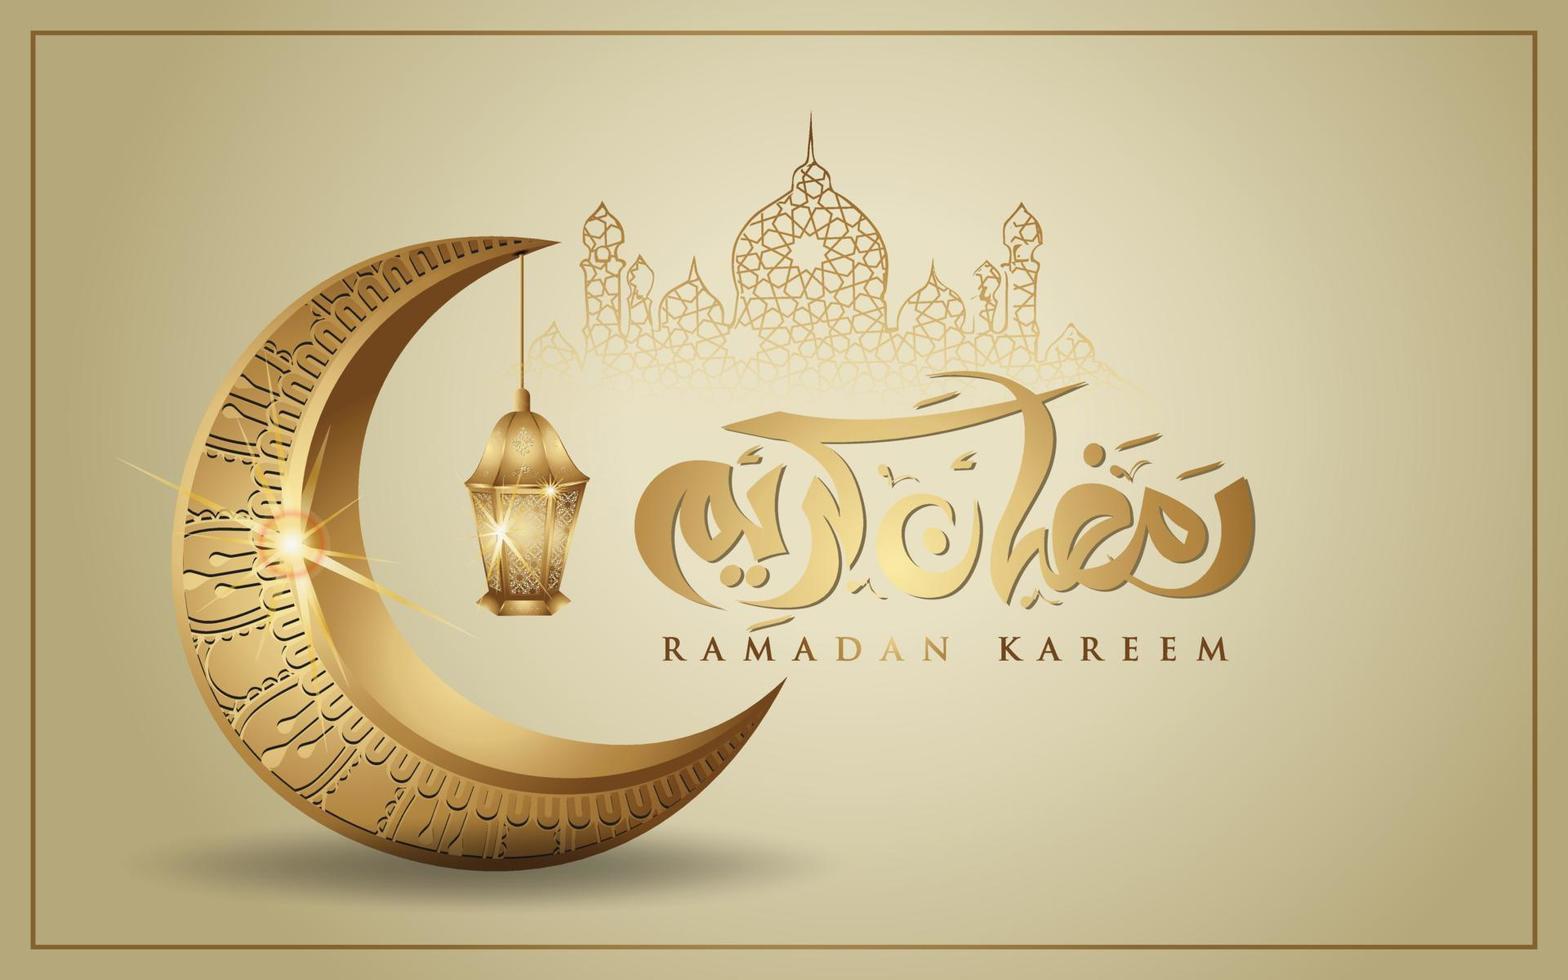 ramadan kareem con lujosa luna creciente dorada, vector de tarjeta de felicitación ornamentada islámica de plantilla